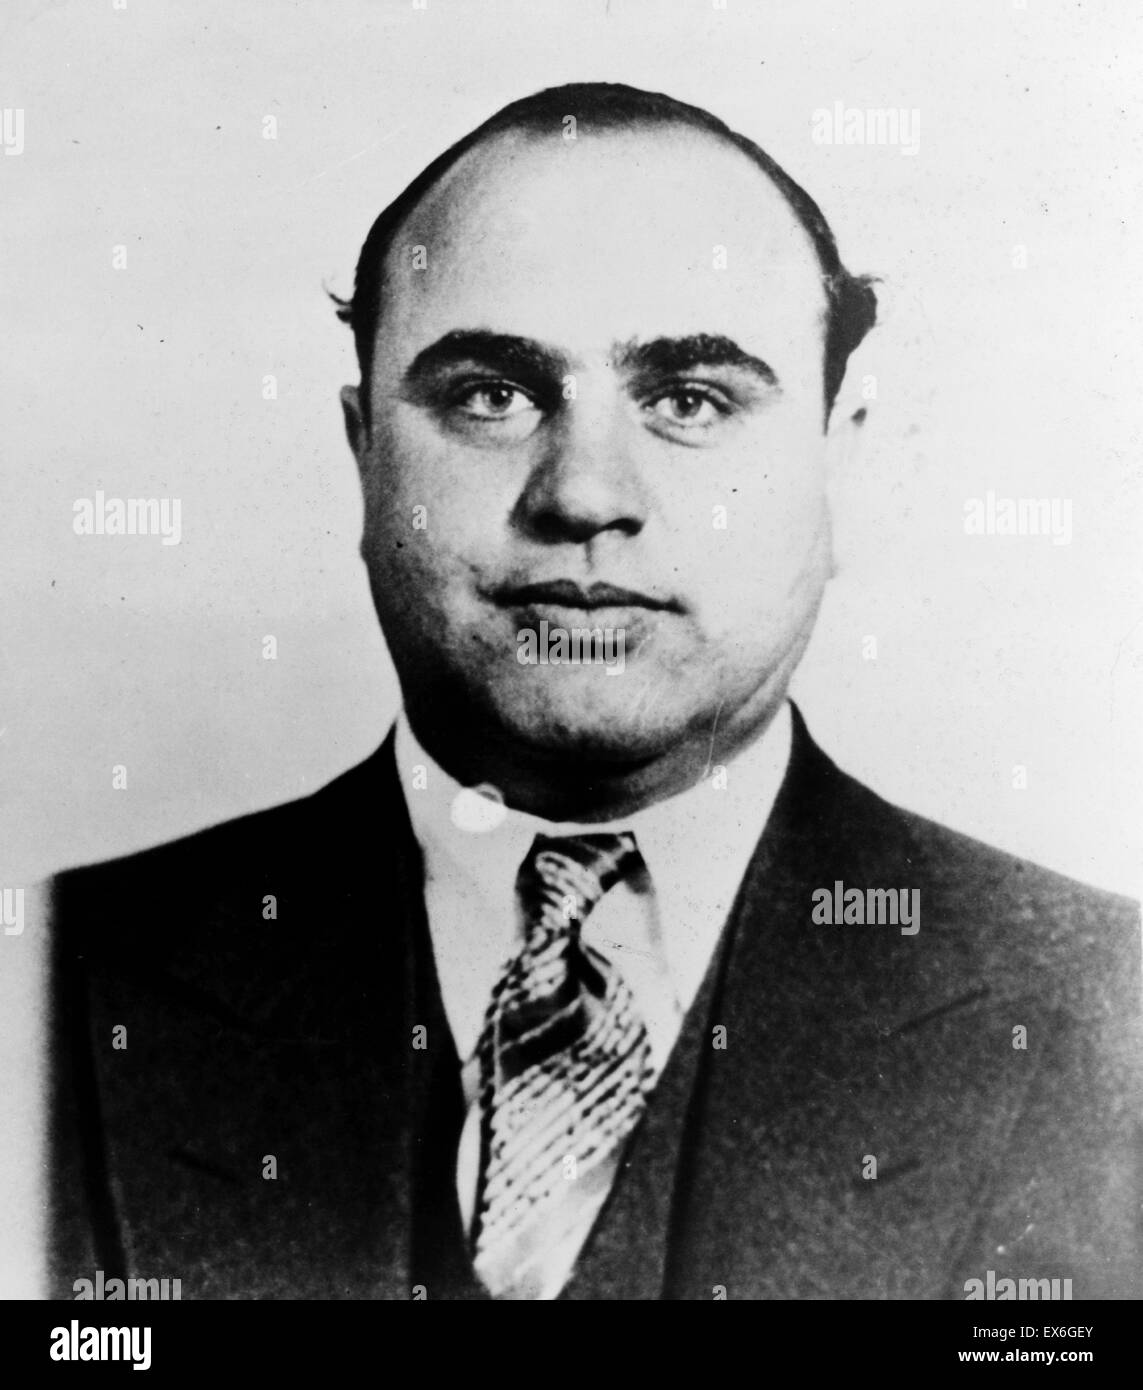 Photographie d'Alphonse Gabriel Capone 'Al' (1899-1947). American Gangster infâme qui atteint la renommée à l'époque de la Prohibition en Amérique. Datée 1945 Banque D'Images